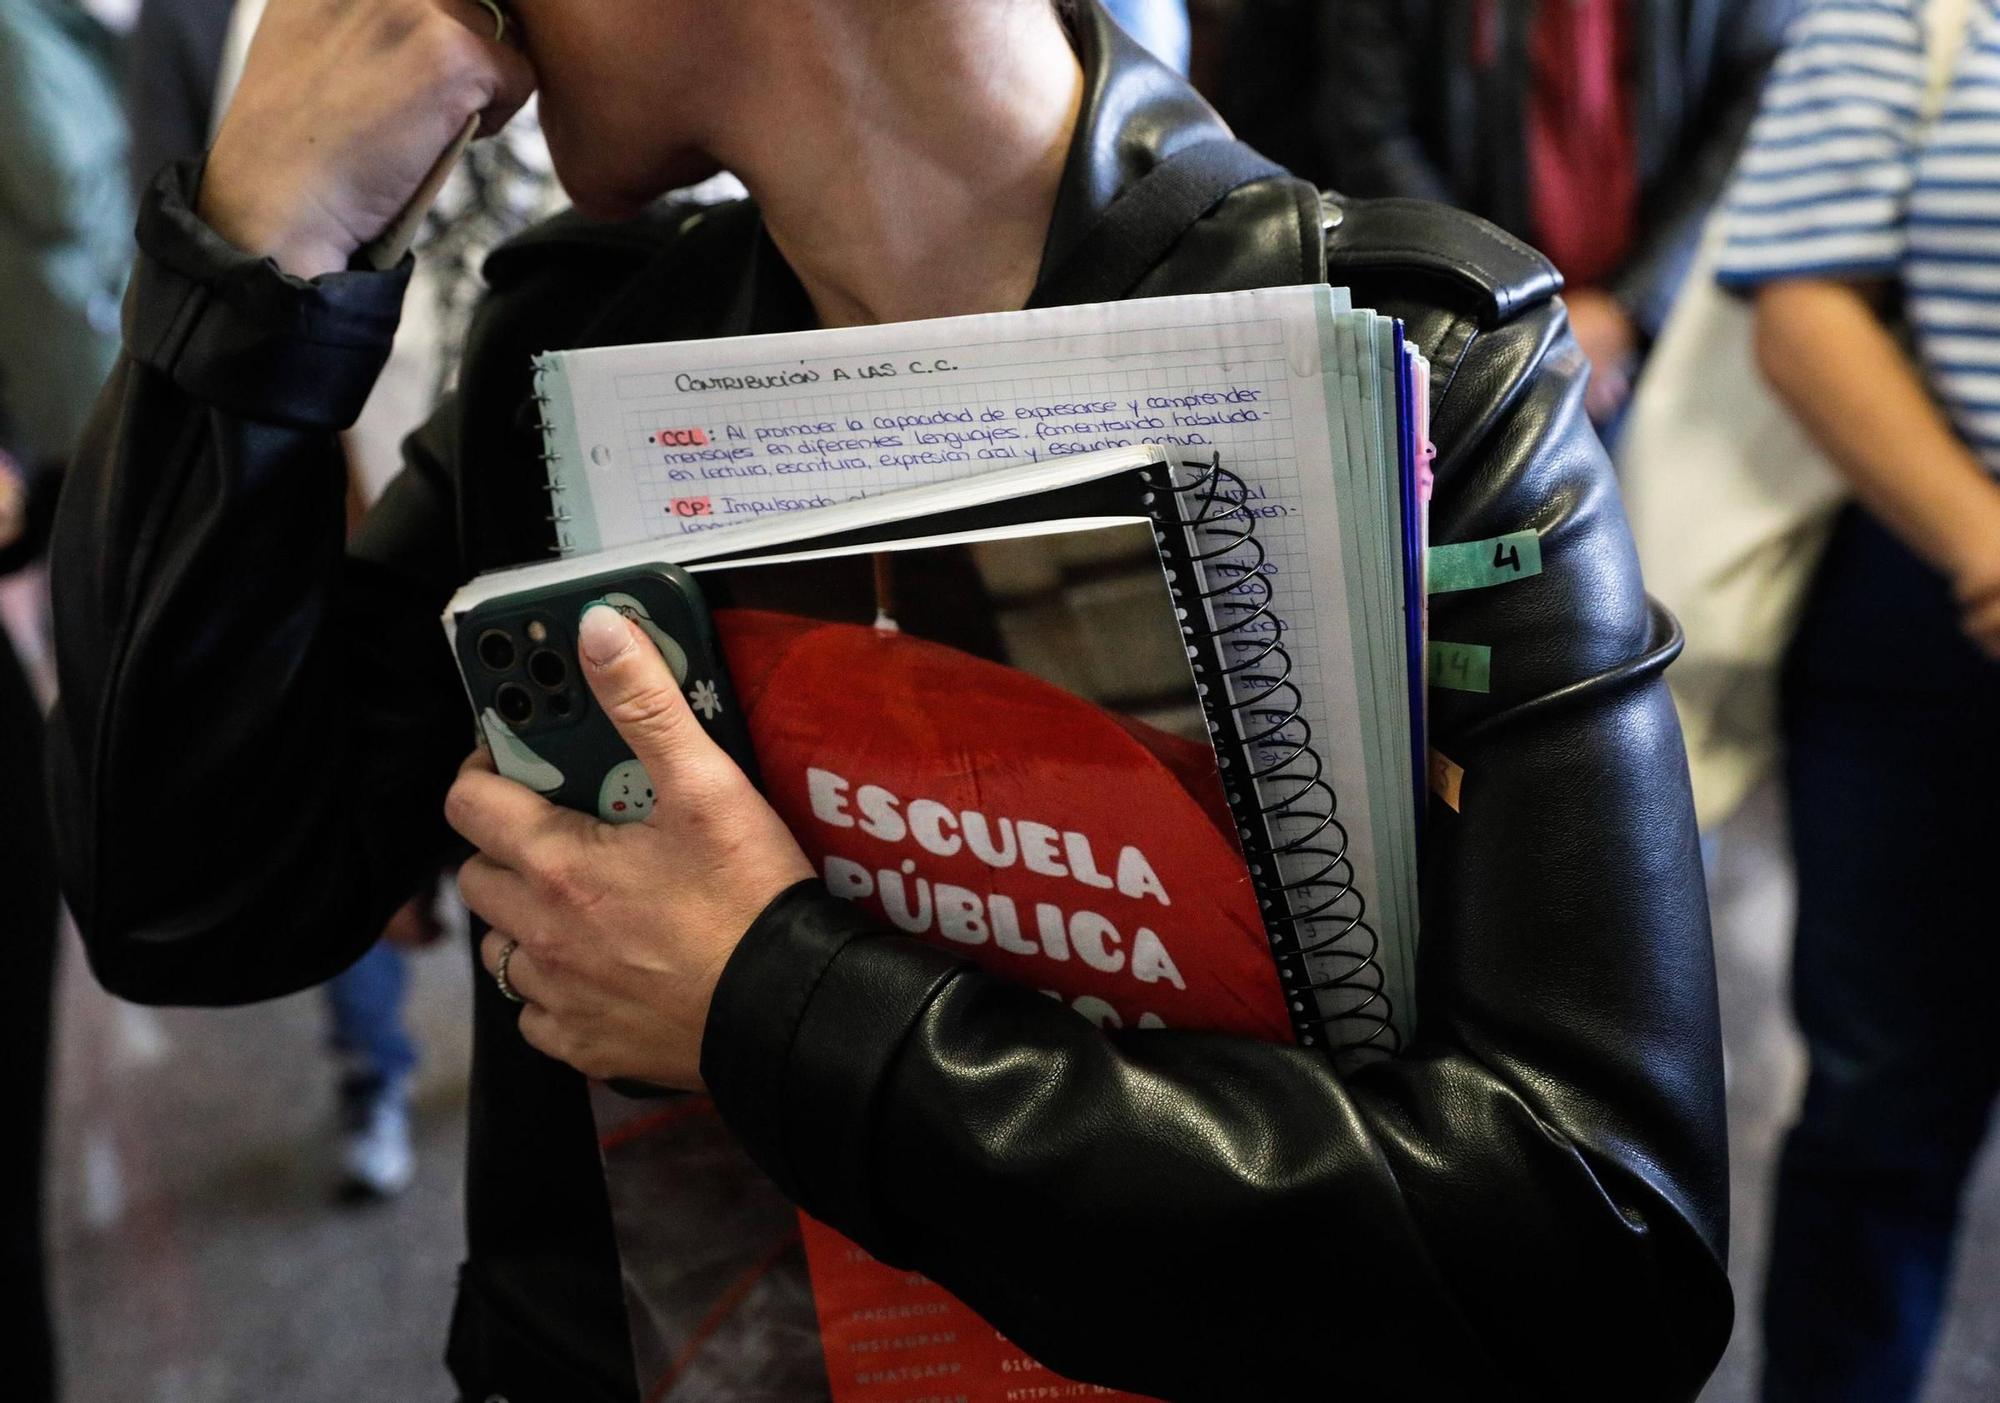 Así fue el inicio de la oposición de los maestros asturianos en Gijón: "Es una carrera de fondo" (en imágenes)